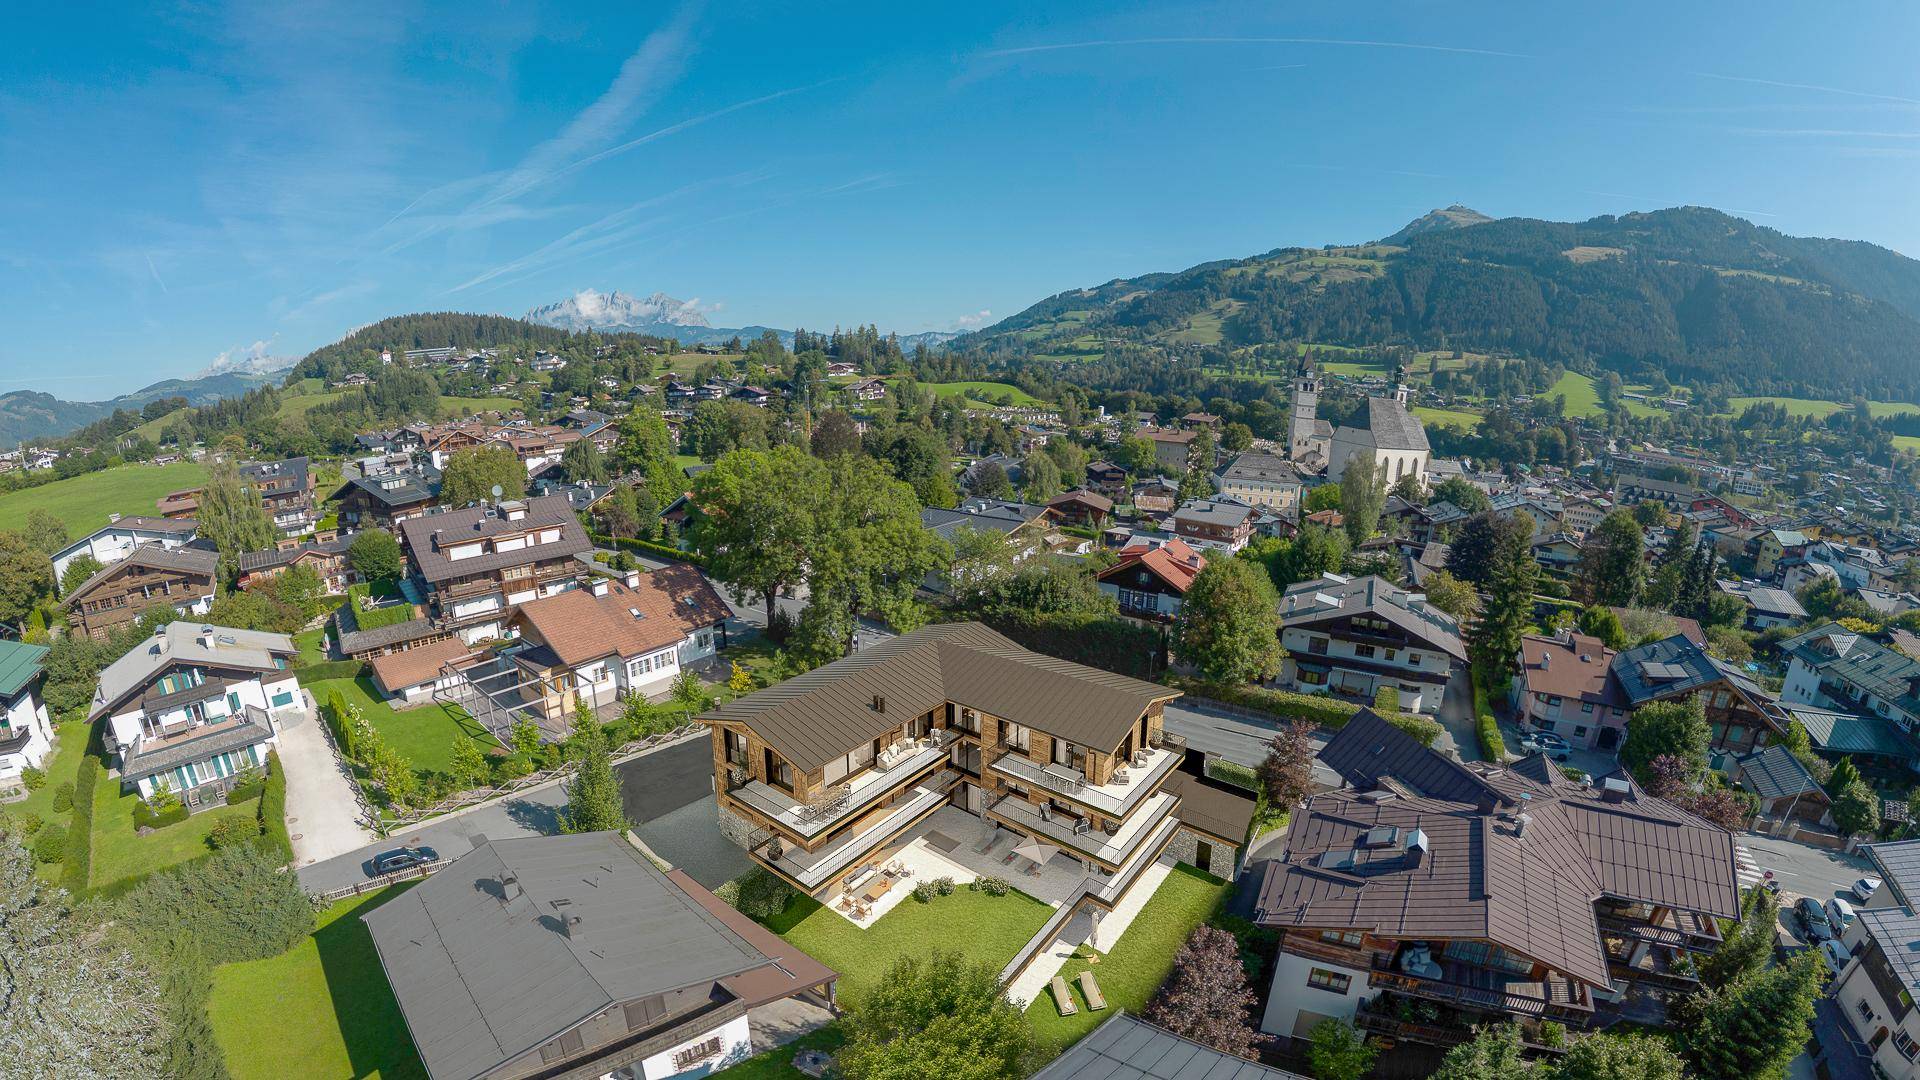 KITZIMMO-Luxus-Townhouse in zentraler Toplage kaufen Immobilien Kitzbühel.